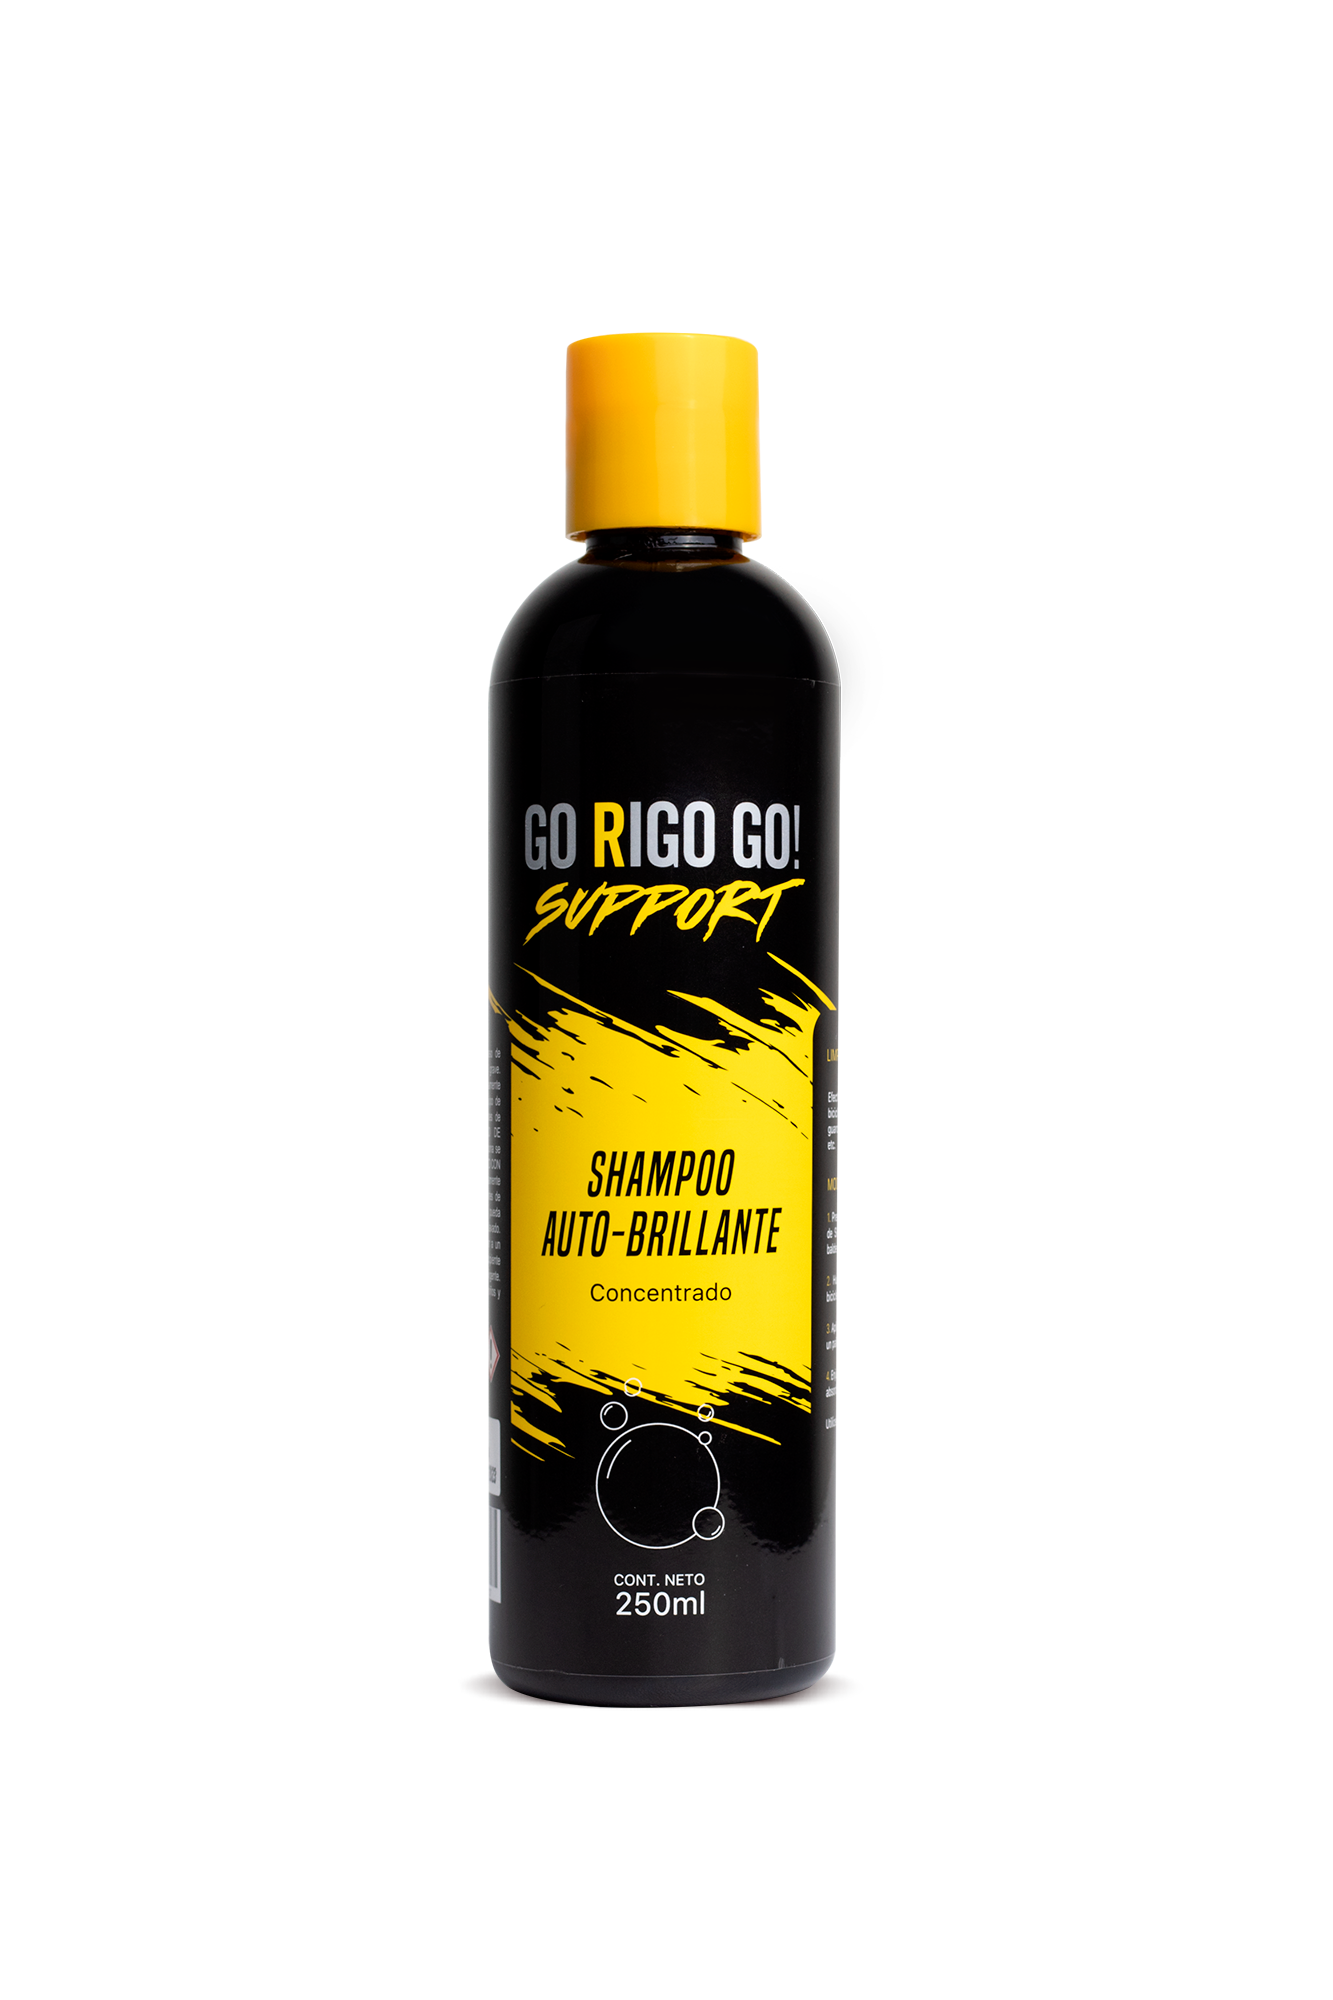 Shampoo Autobrillante Support (2964869972032)